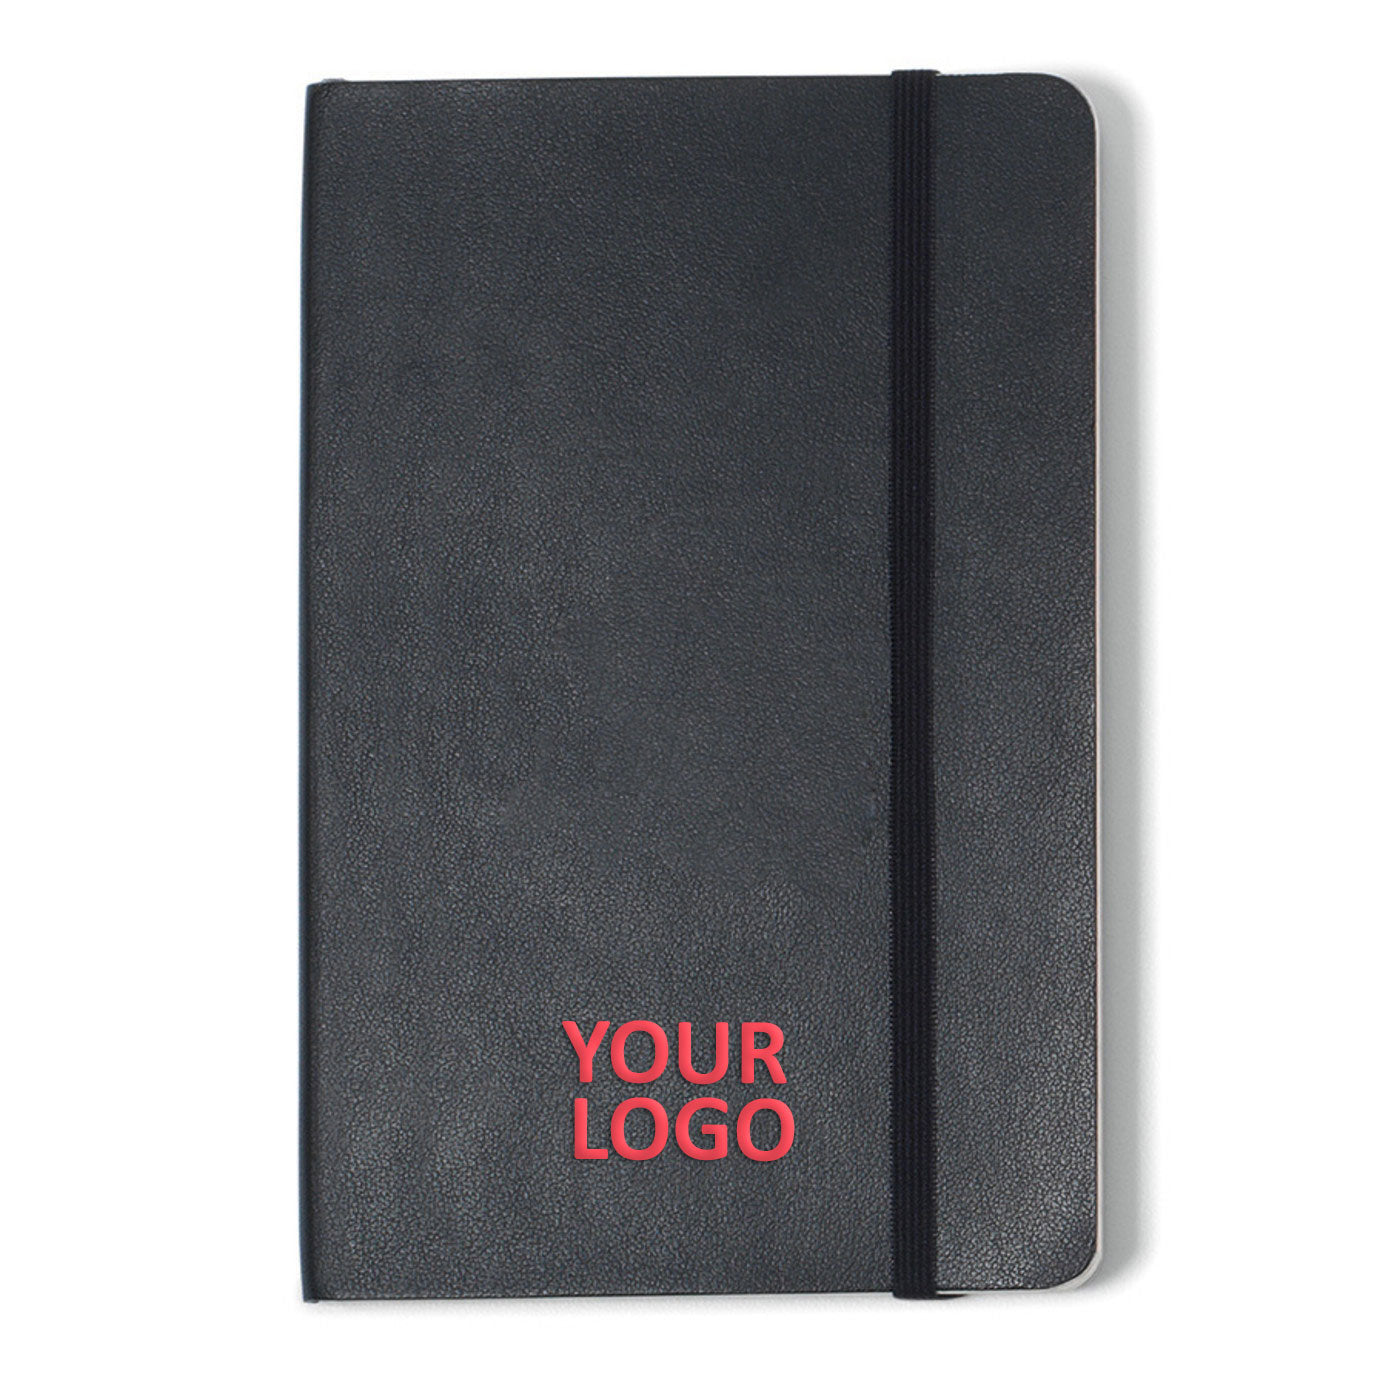 Moleskine Soft Cover Ruled Pocket Notebook Black